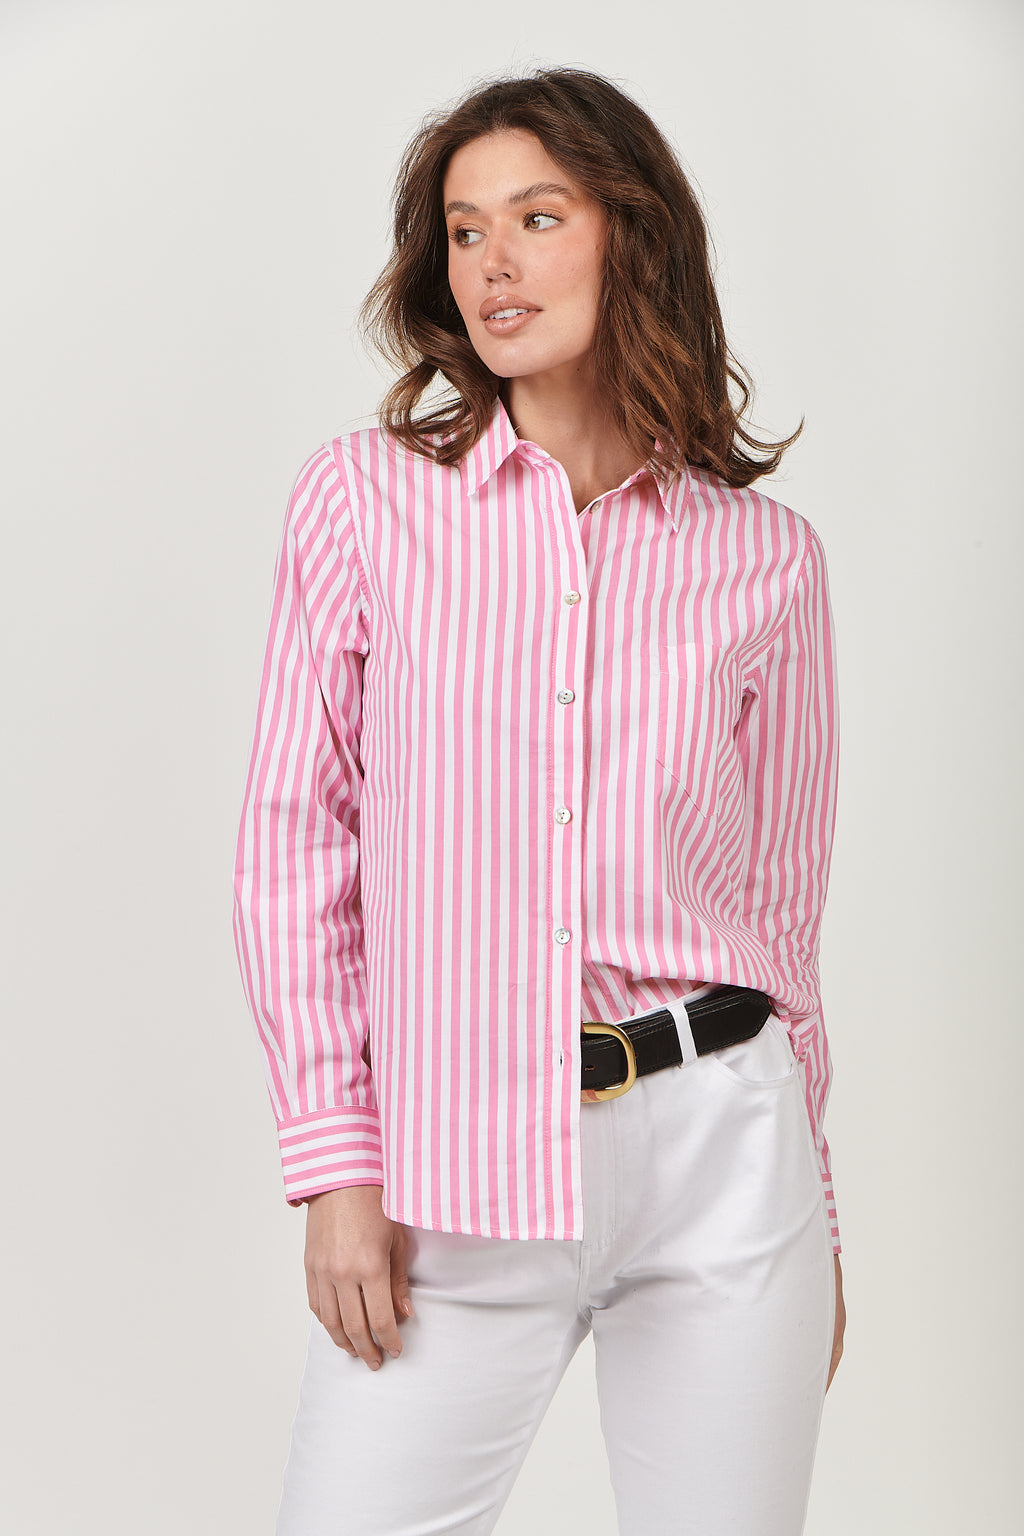 Straight Lines Shirt Rhubarb